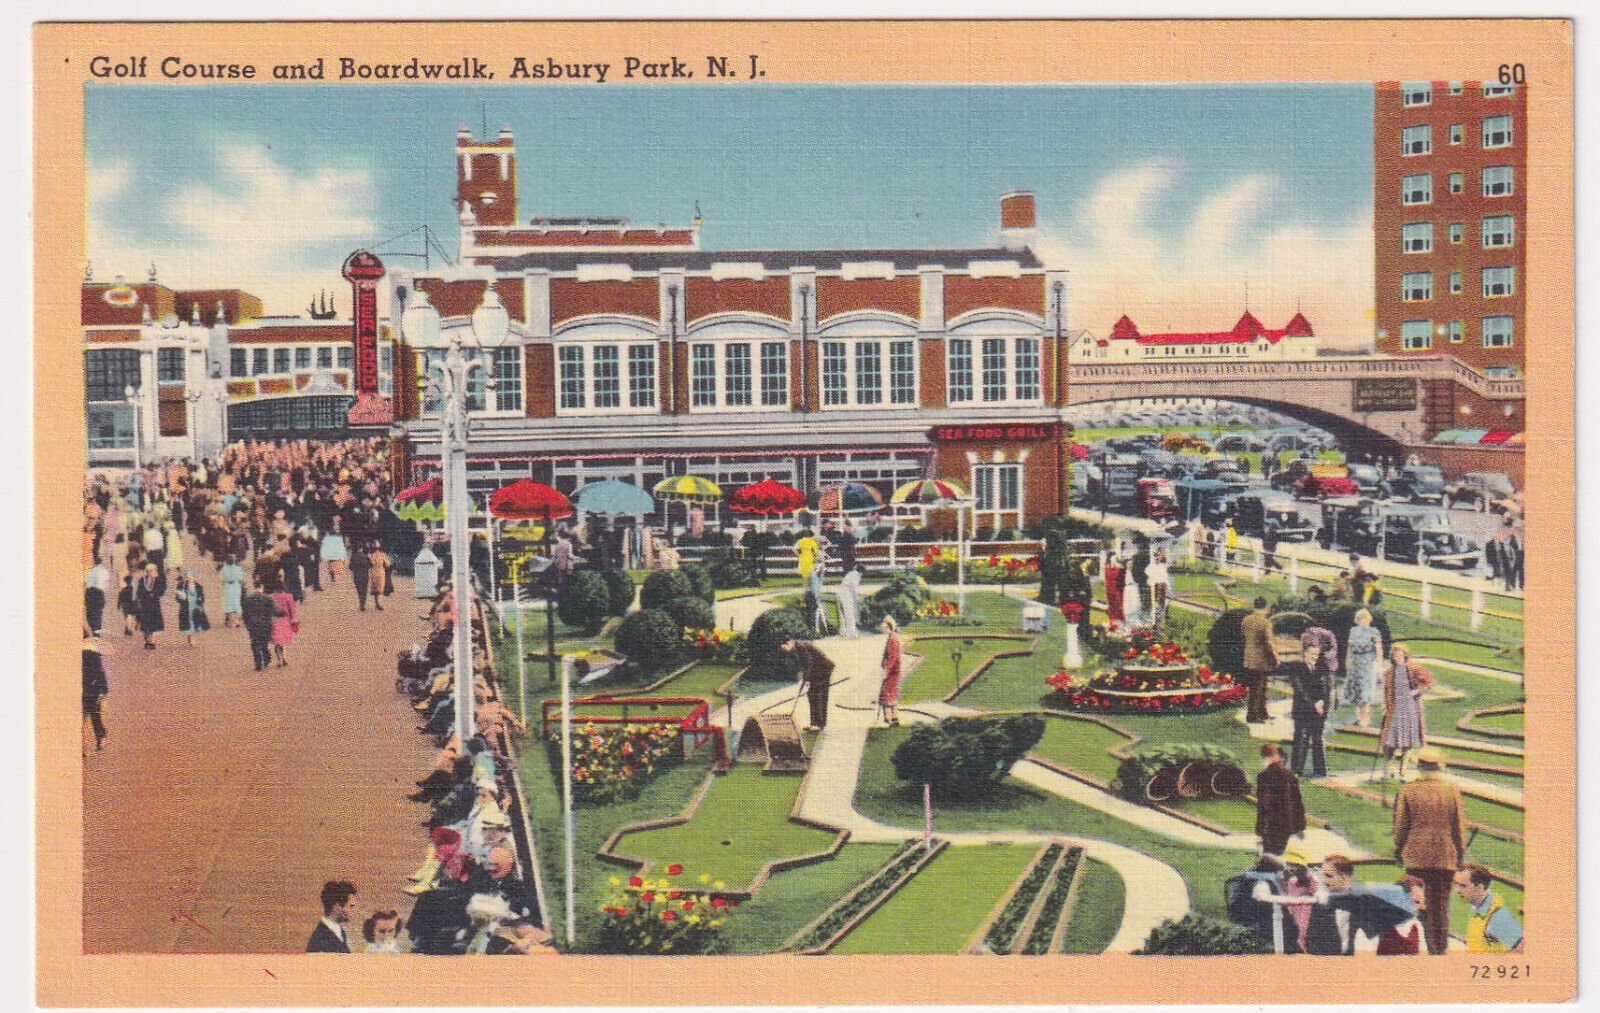 NEW JERSEY ASBURY PARK MINIATURE GOLF AND BOARDWALK LINEN POSTCARD ca 1940.